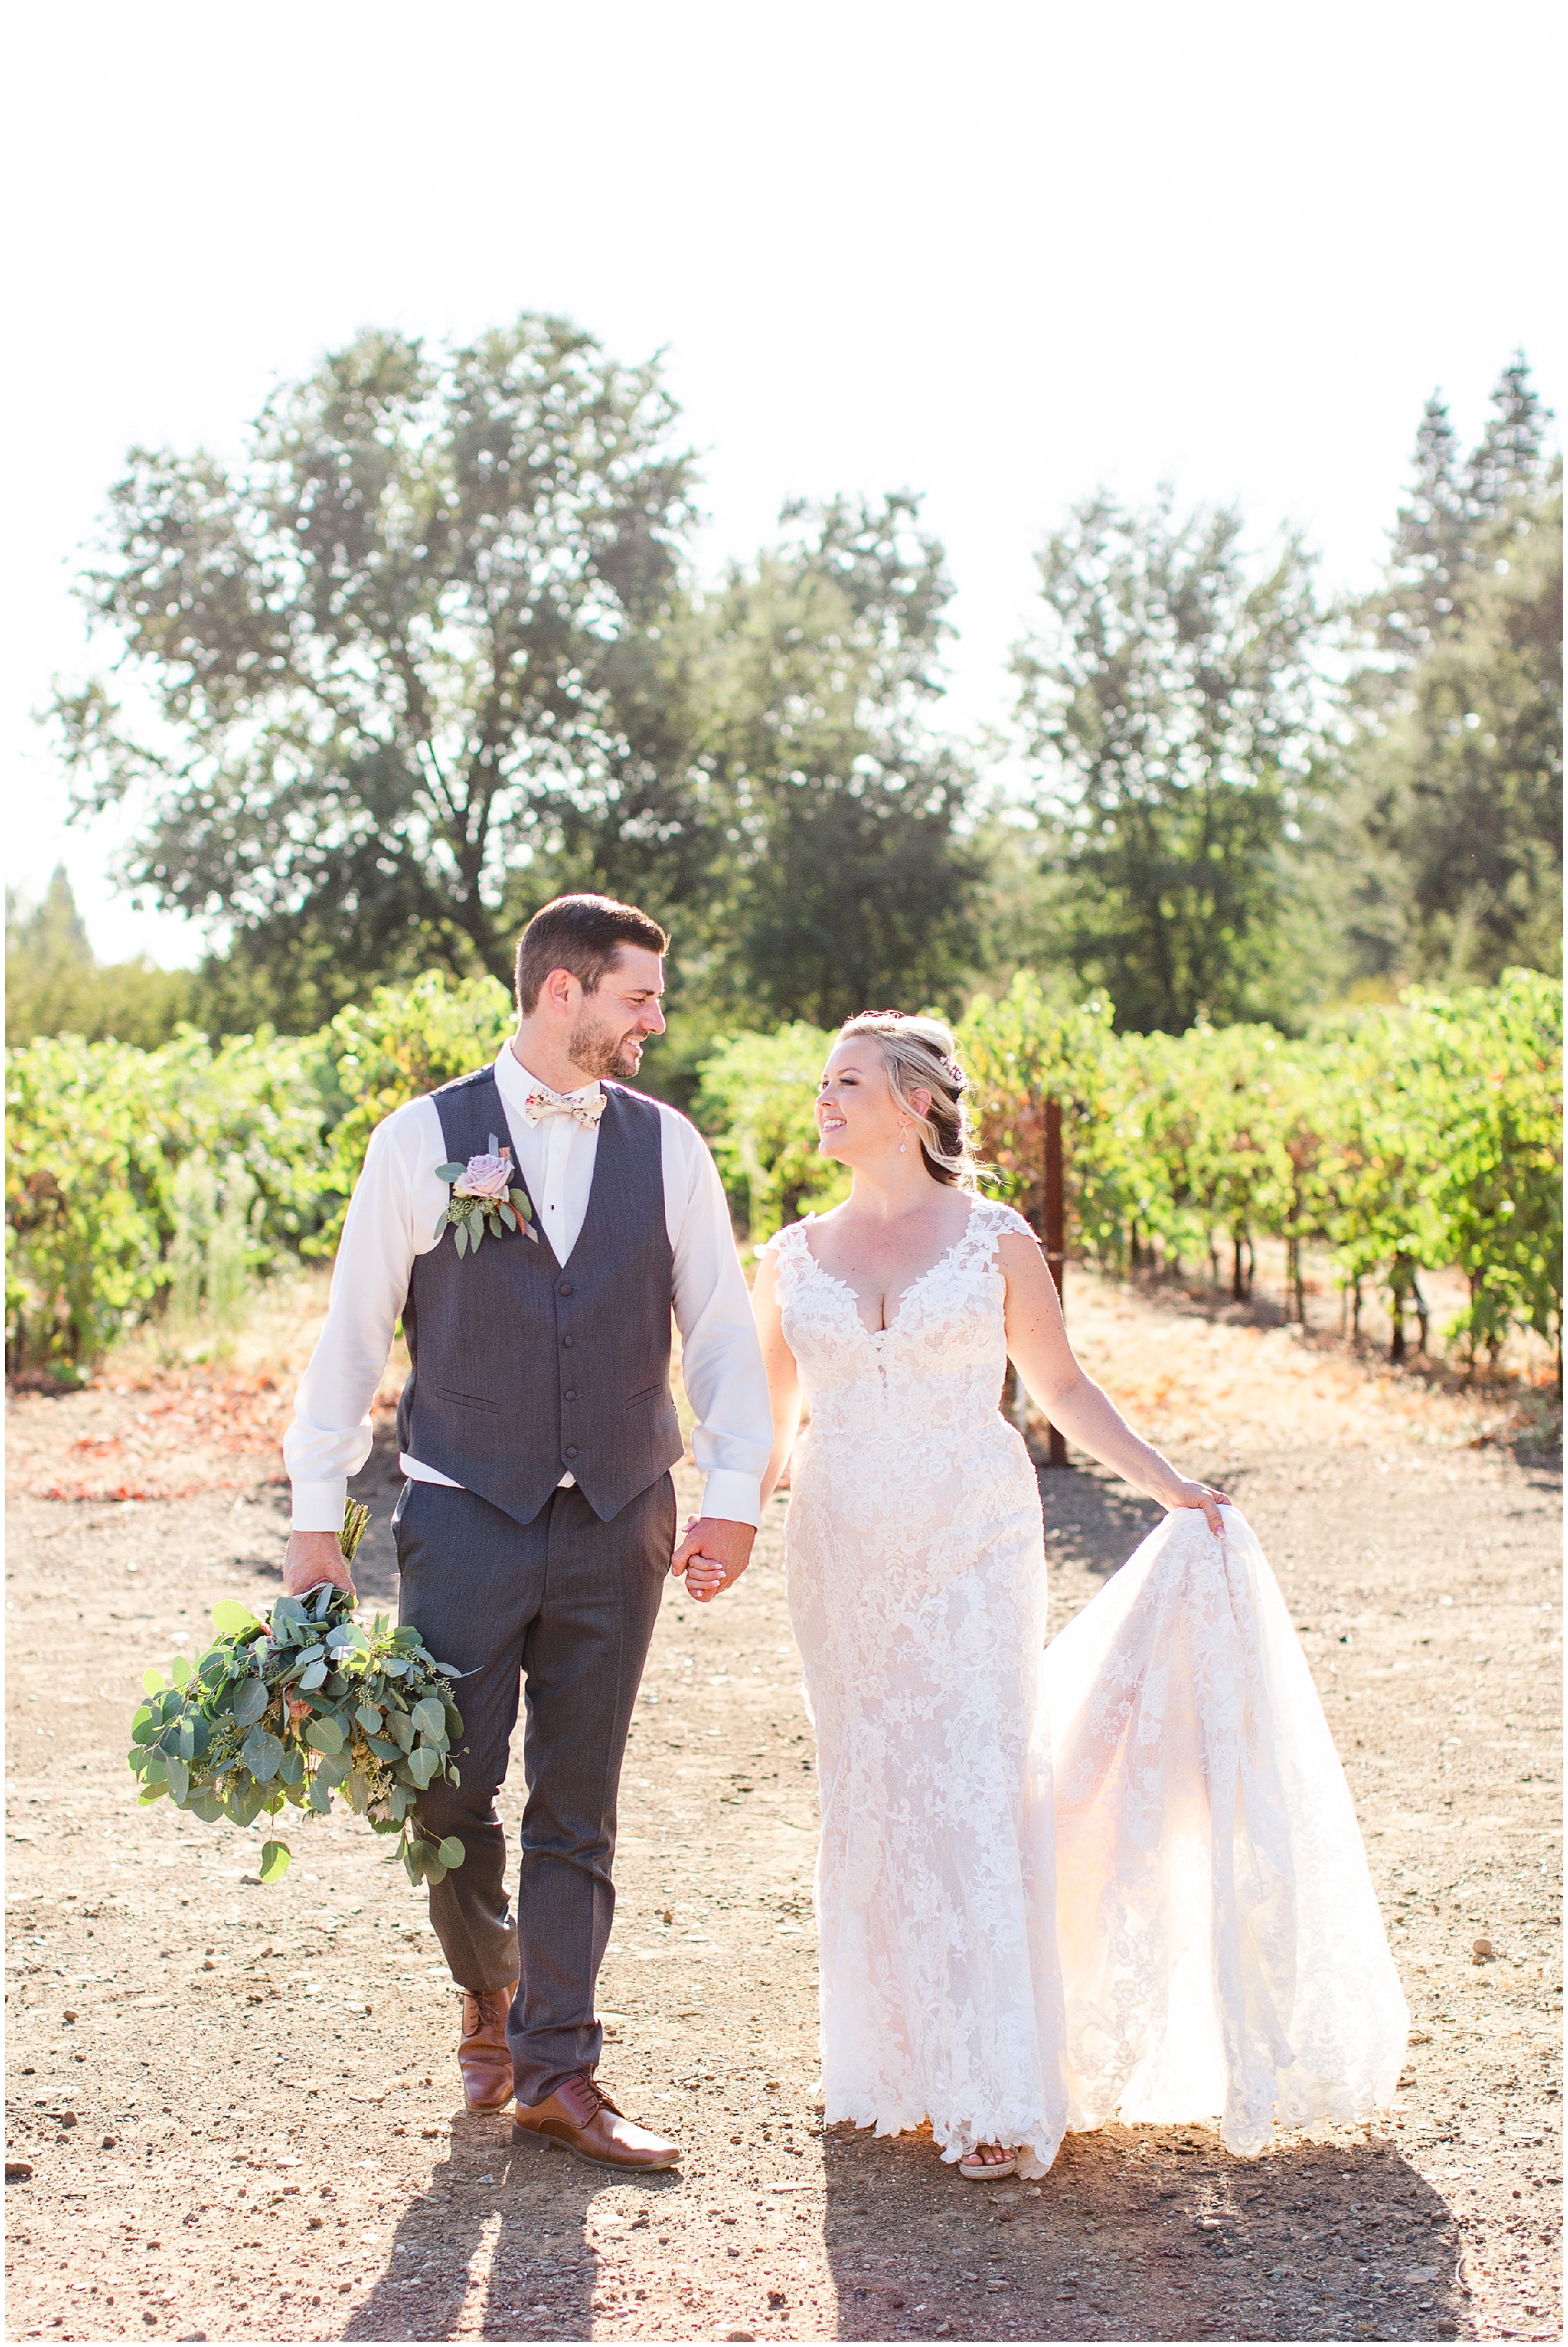 Romantic Garden Wedding in Vineyard, Write own Vows | Amanda + Scott